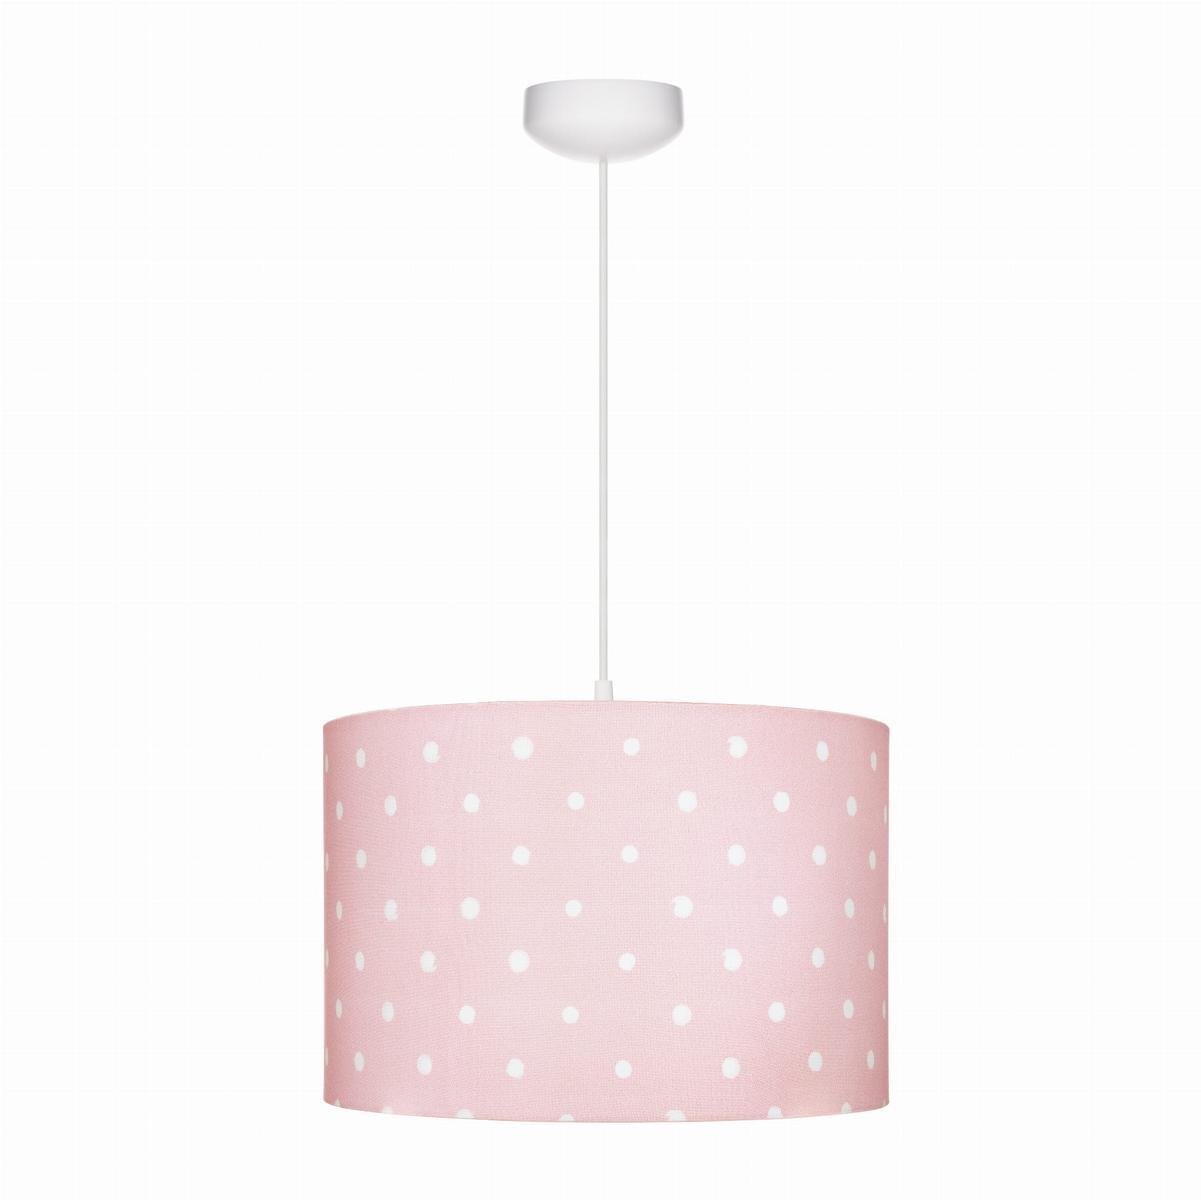 Lampa wisząca 35x35x23 cm do pokoju dziecka różowa w kropki drewno białe 0 Full Screen